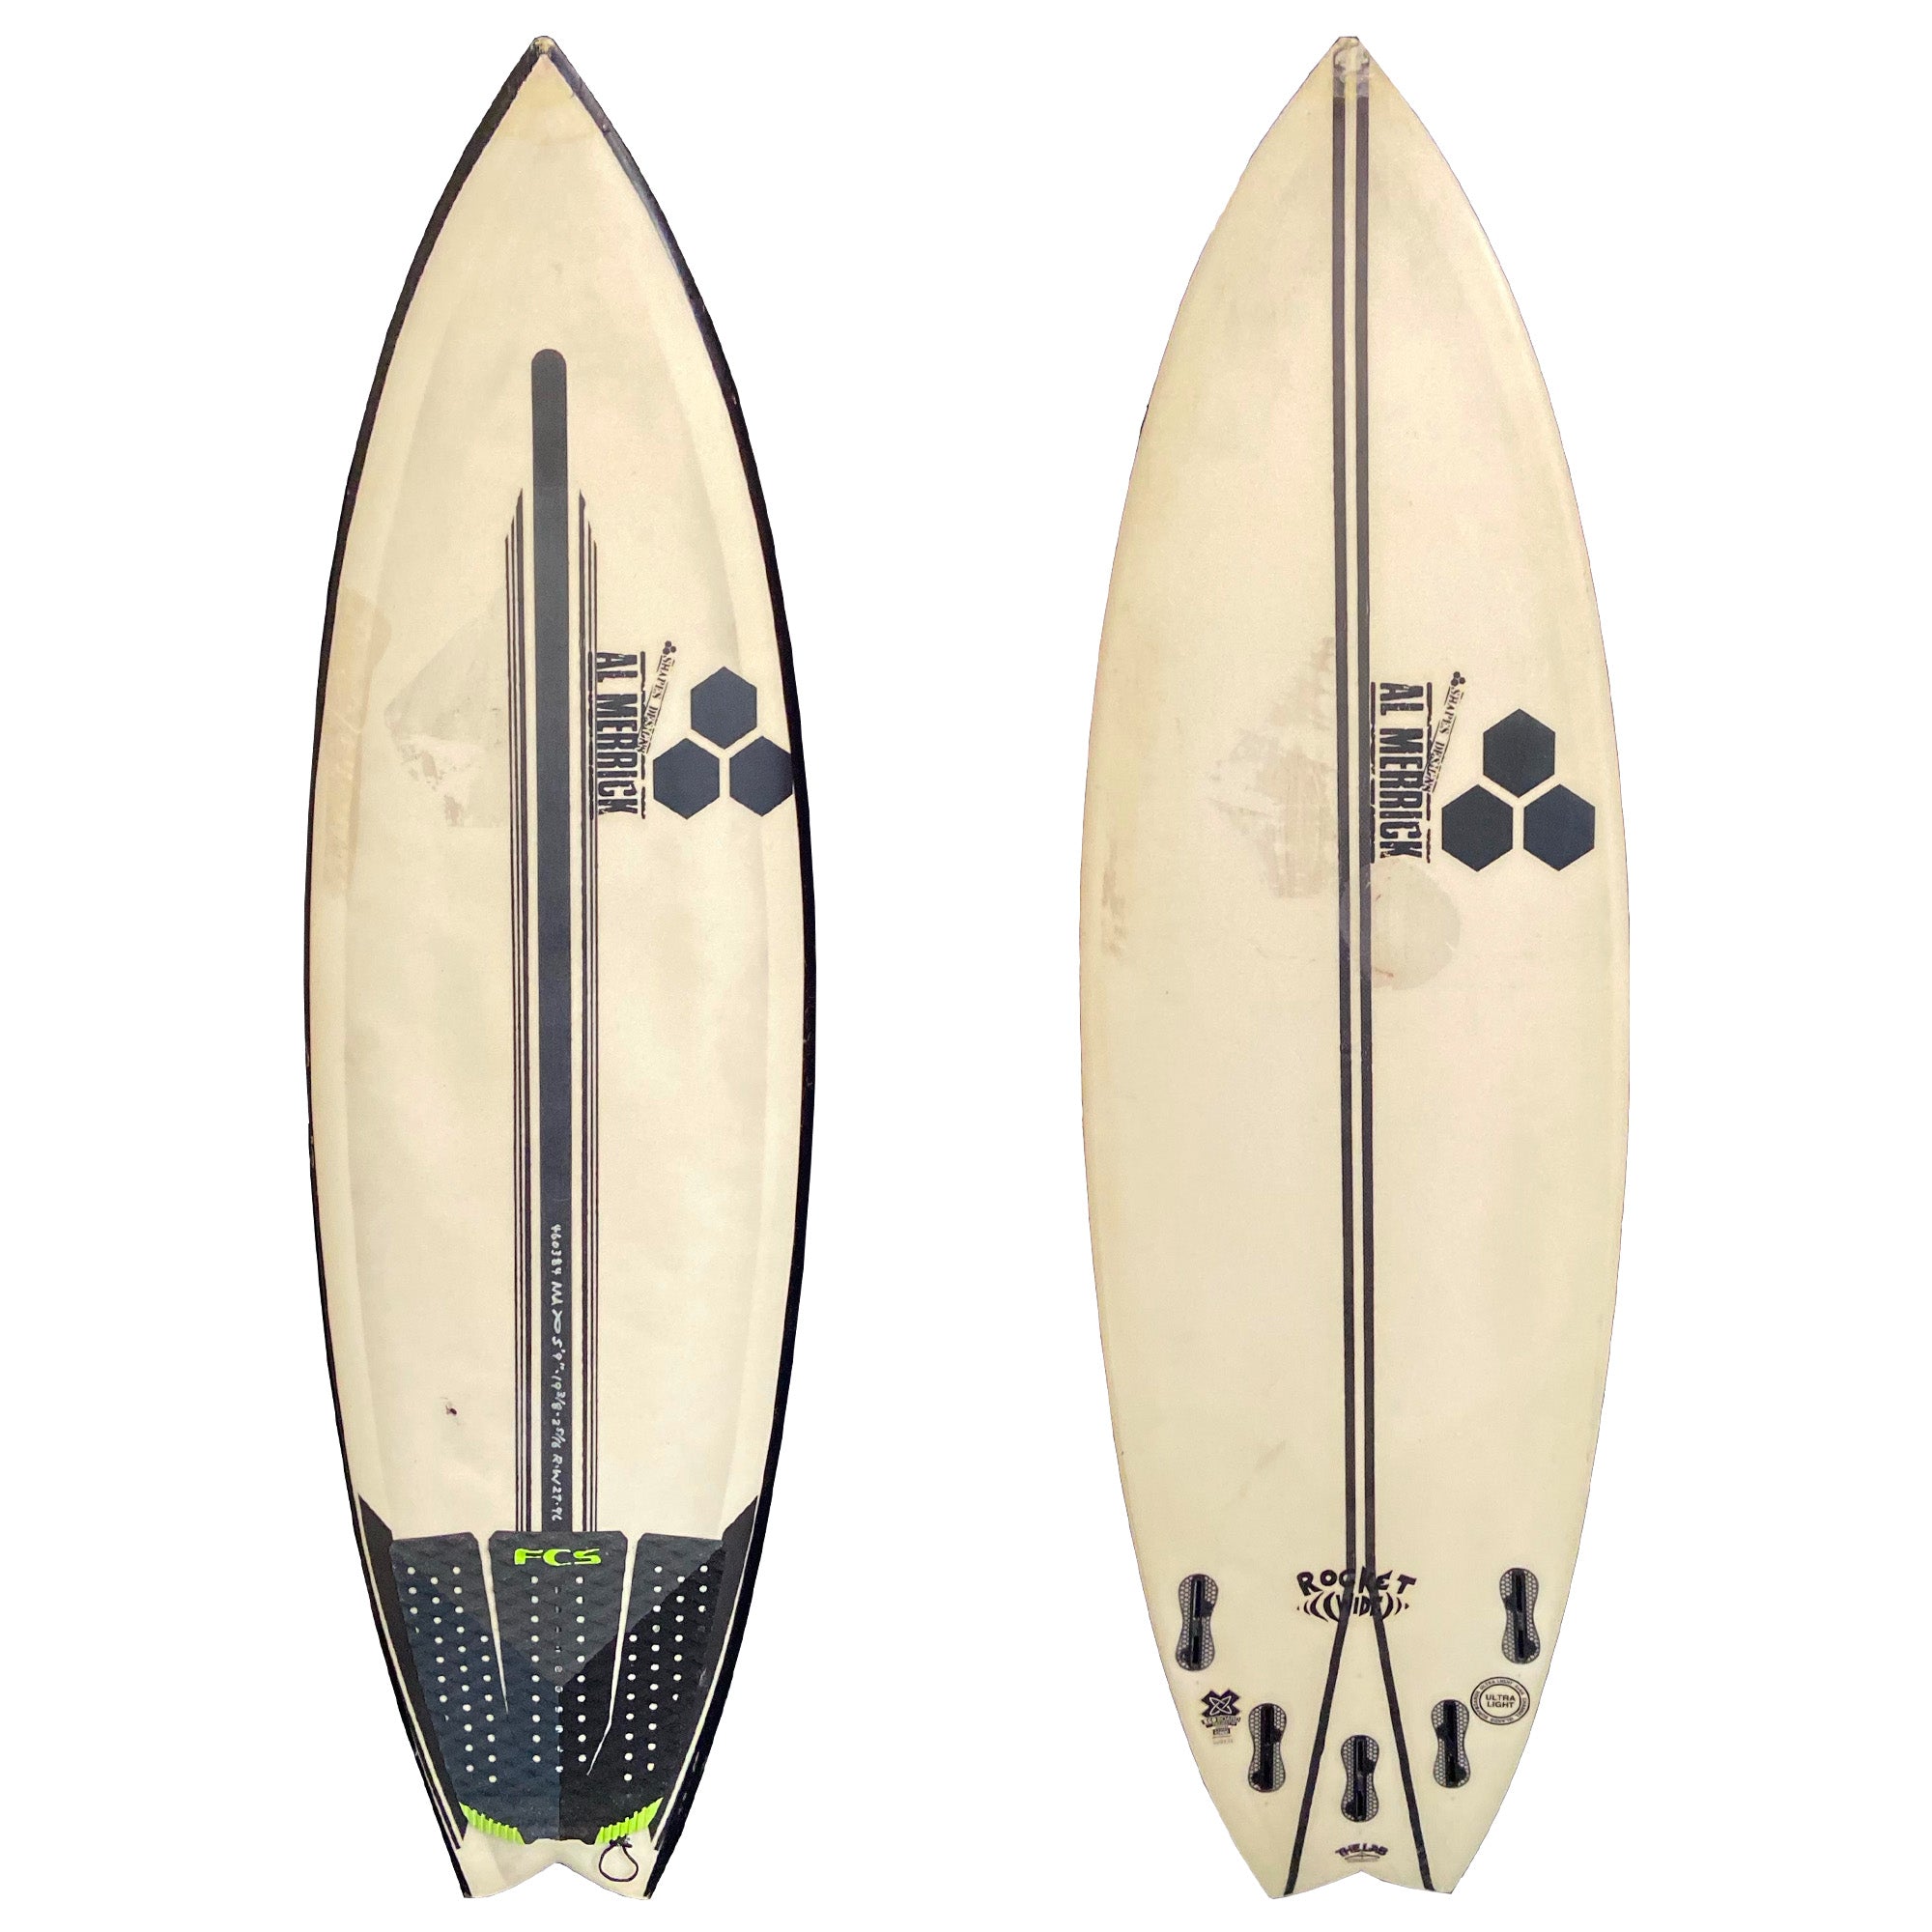 Channel Islands Rocket Wide 5'9 Used Surfboard